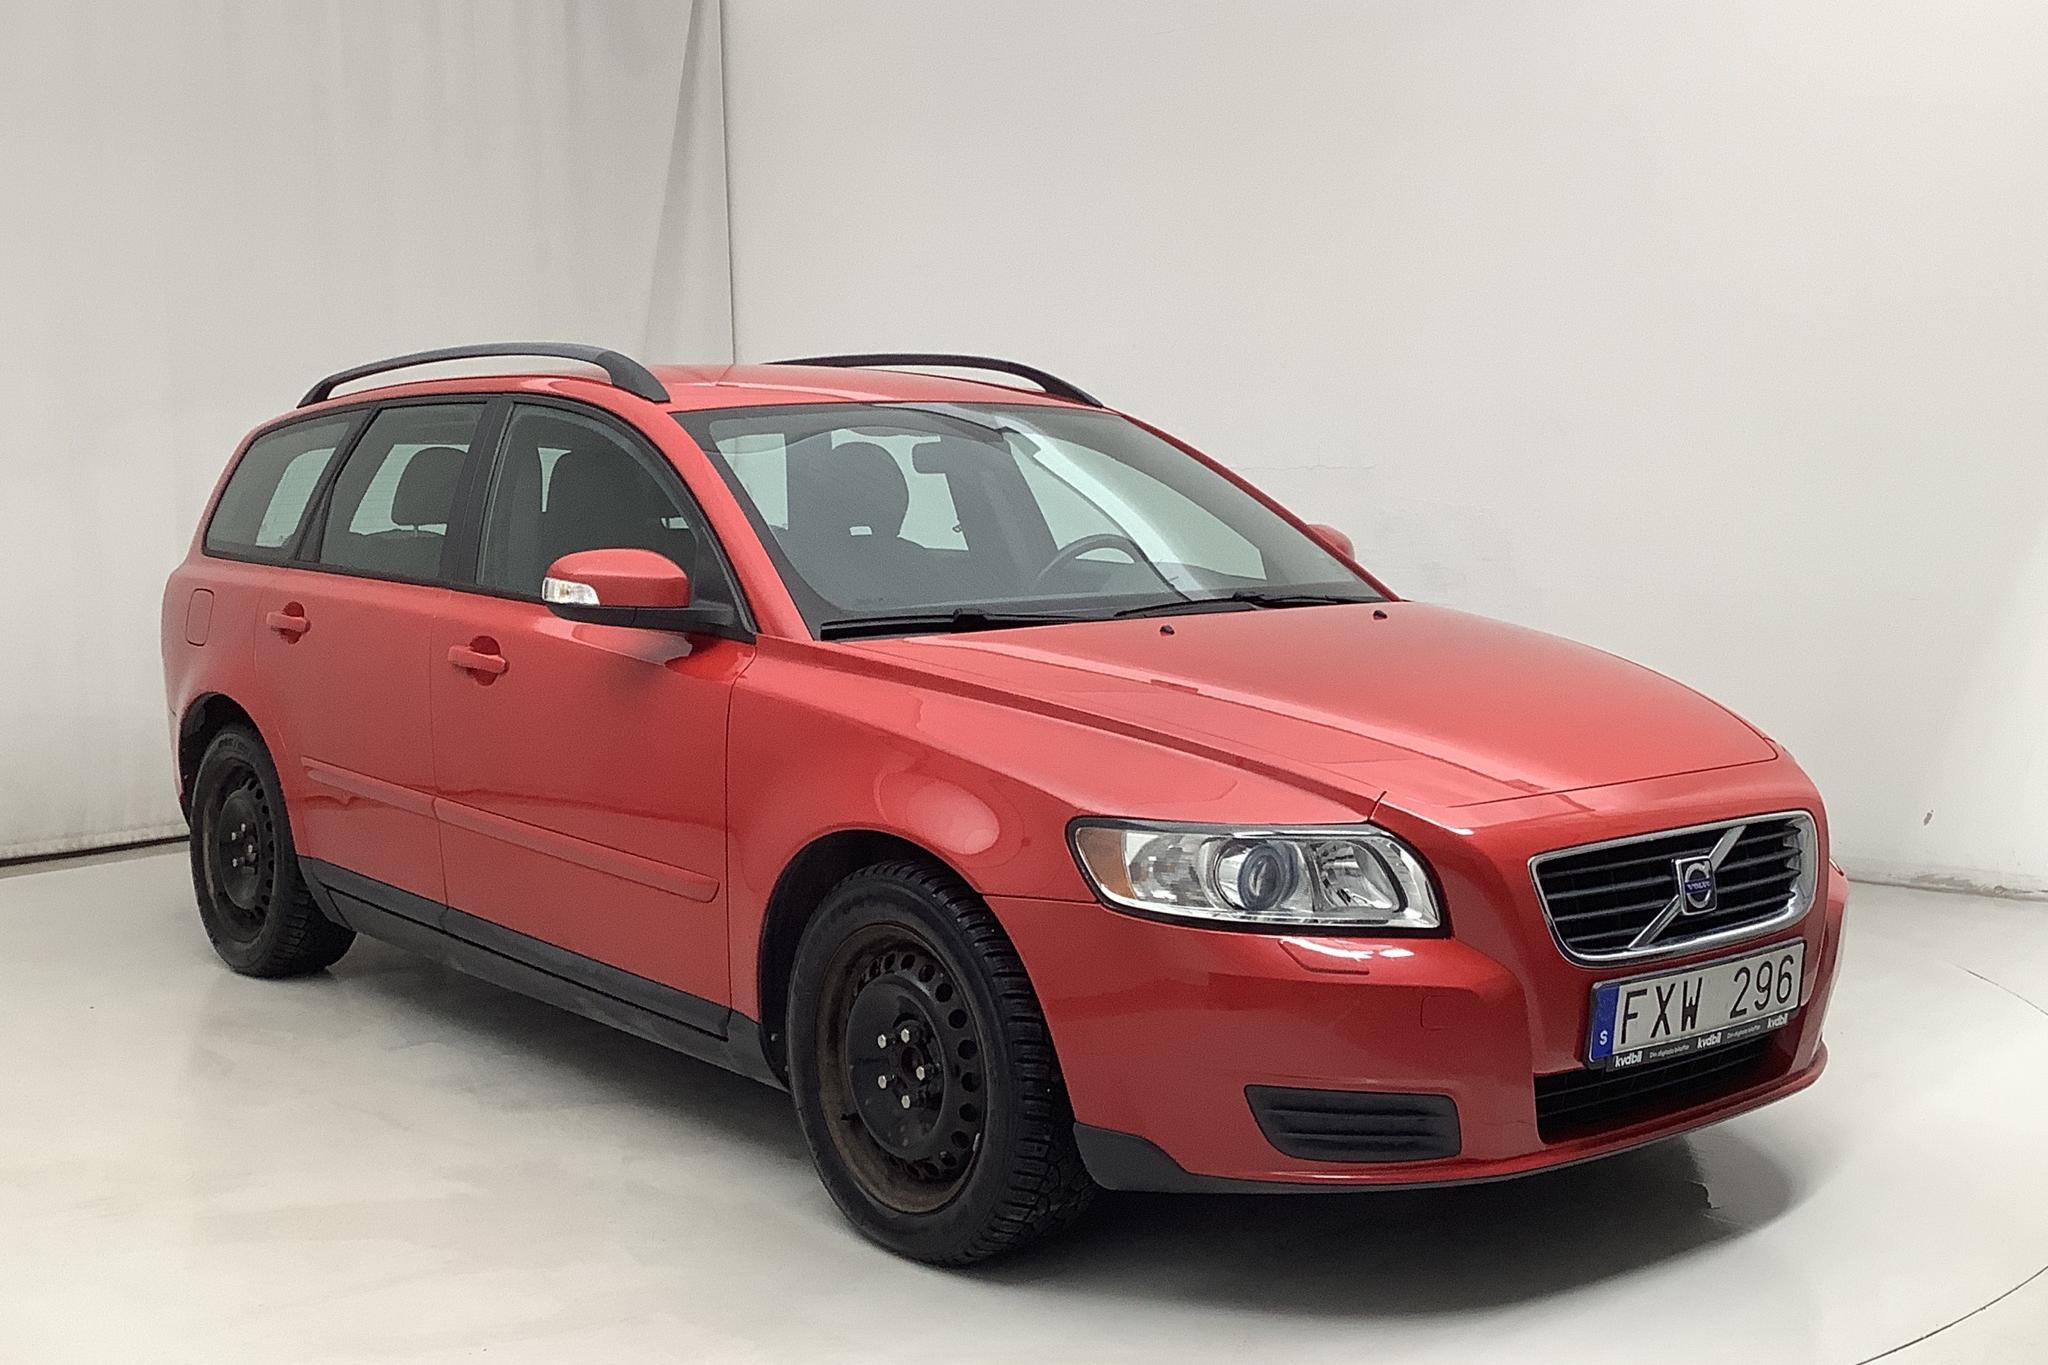 Volvo V50 2.0D (136hk) - 121 830 km - Manual - red - 2008